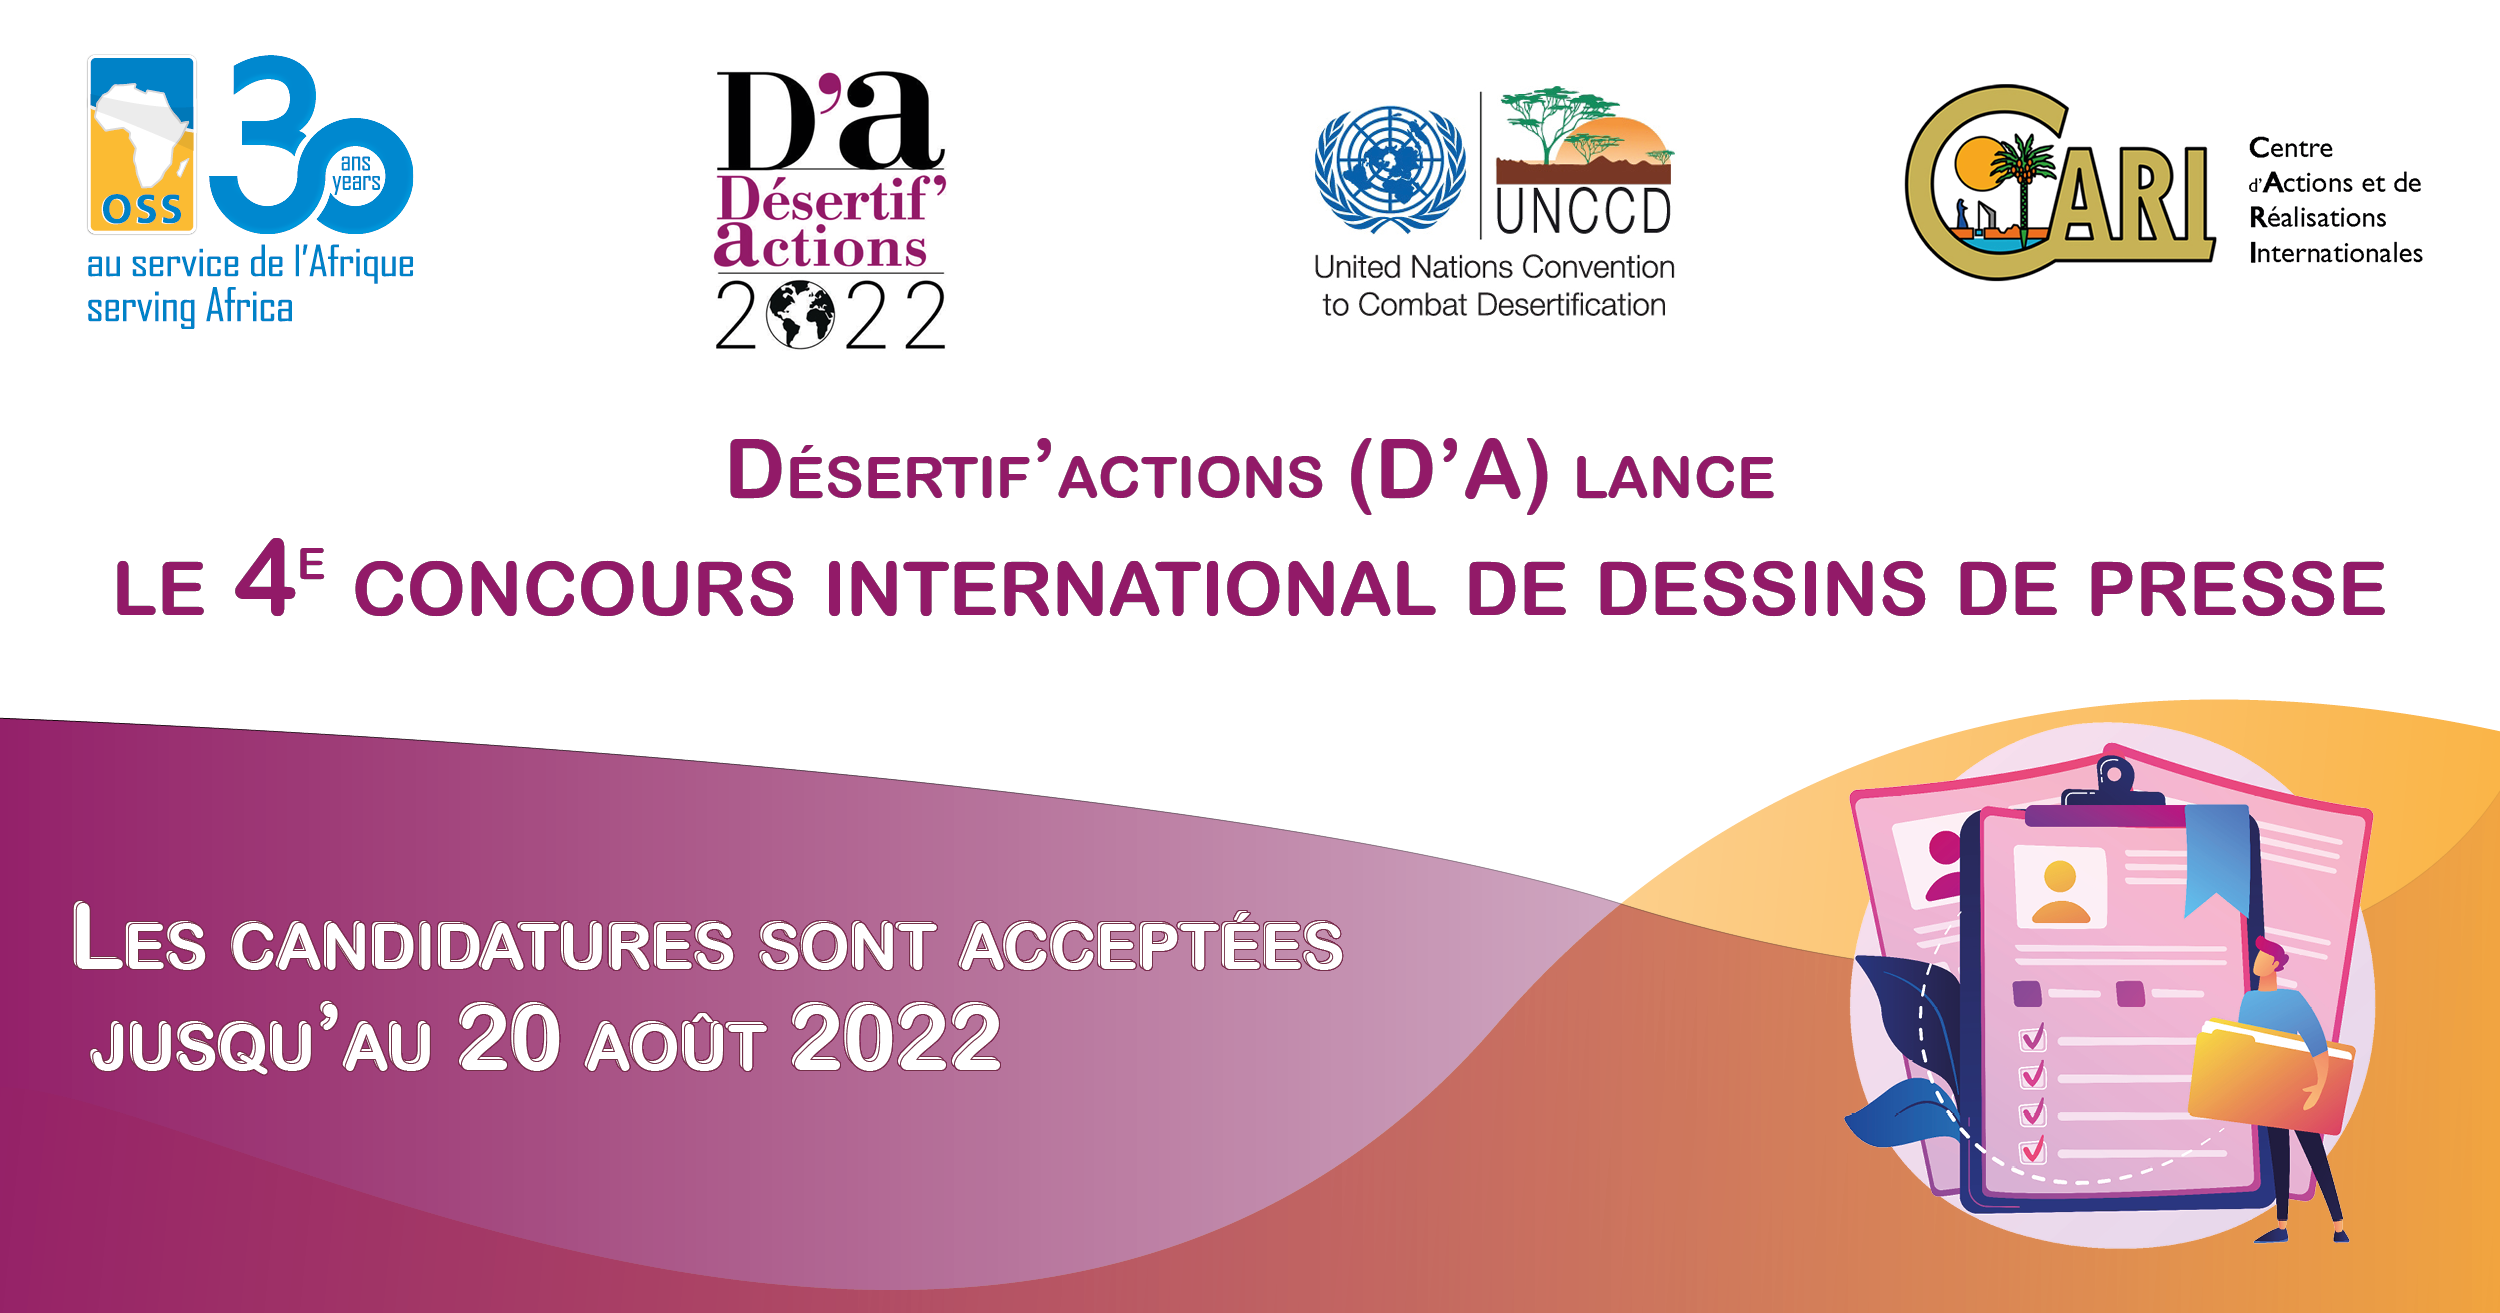  Desertif’actions(D’A) lance le 4e concours international de dessins de presse. Les candidatures sont acceptées jusqu’au 20 août 2022.